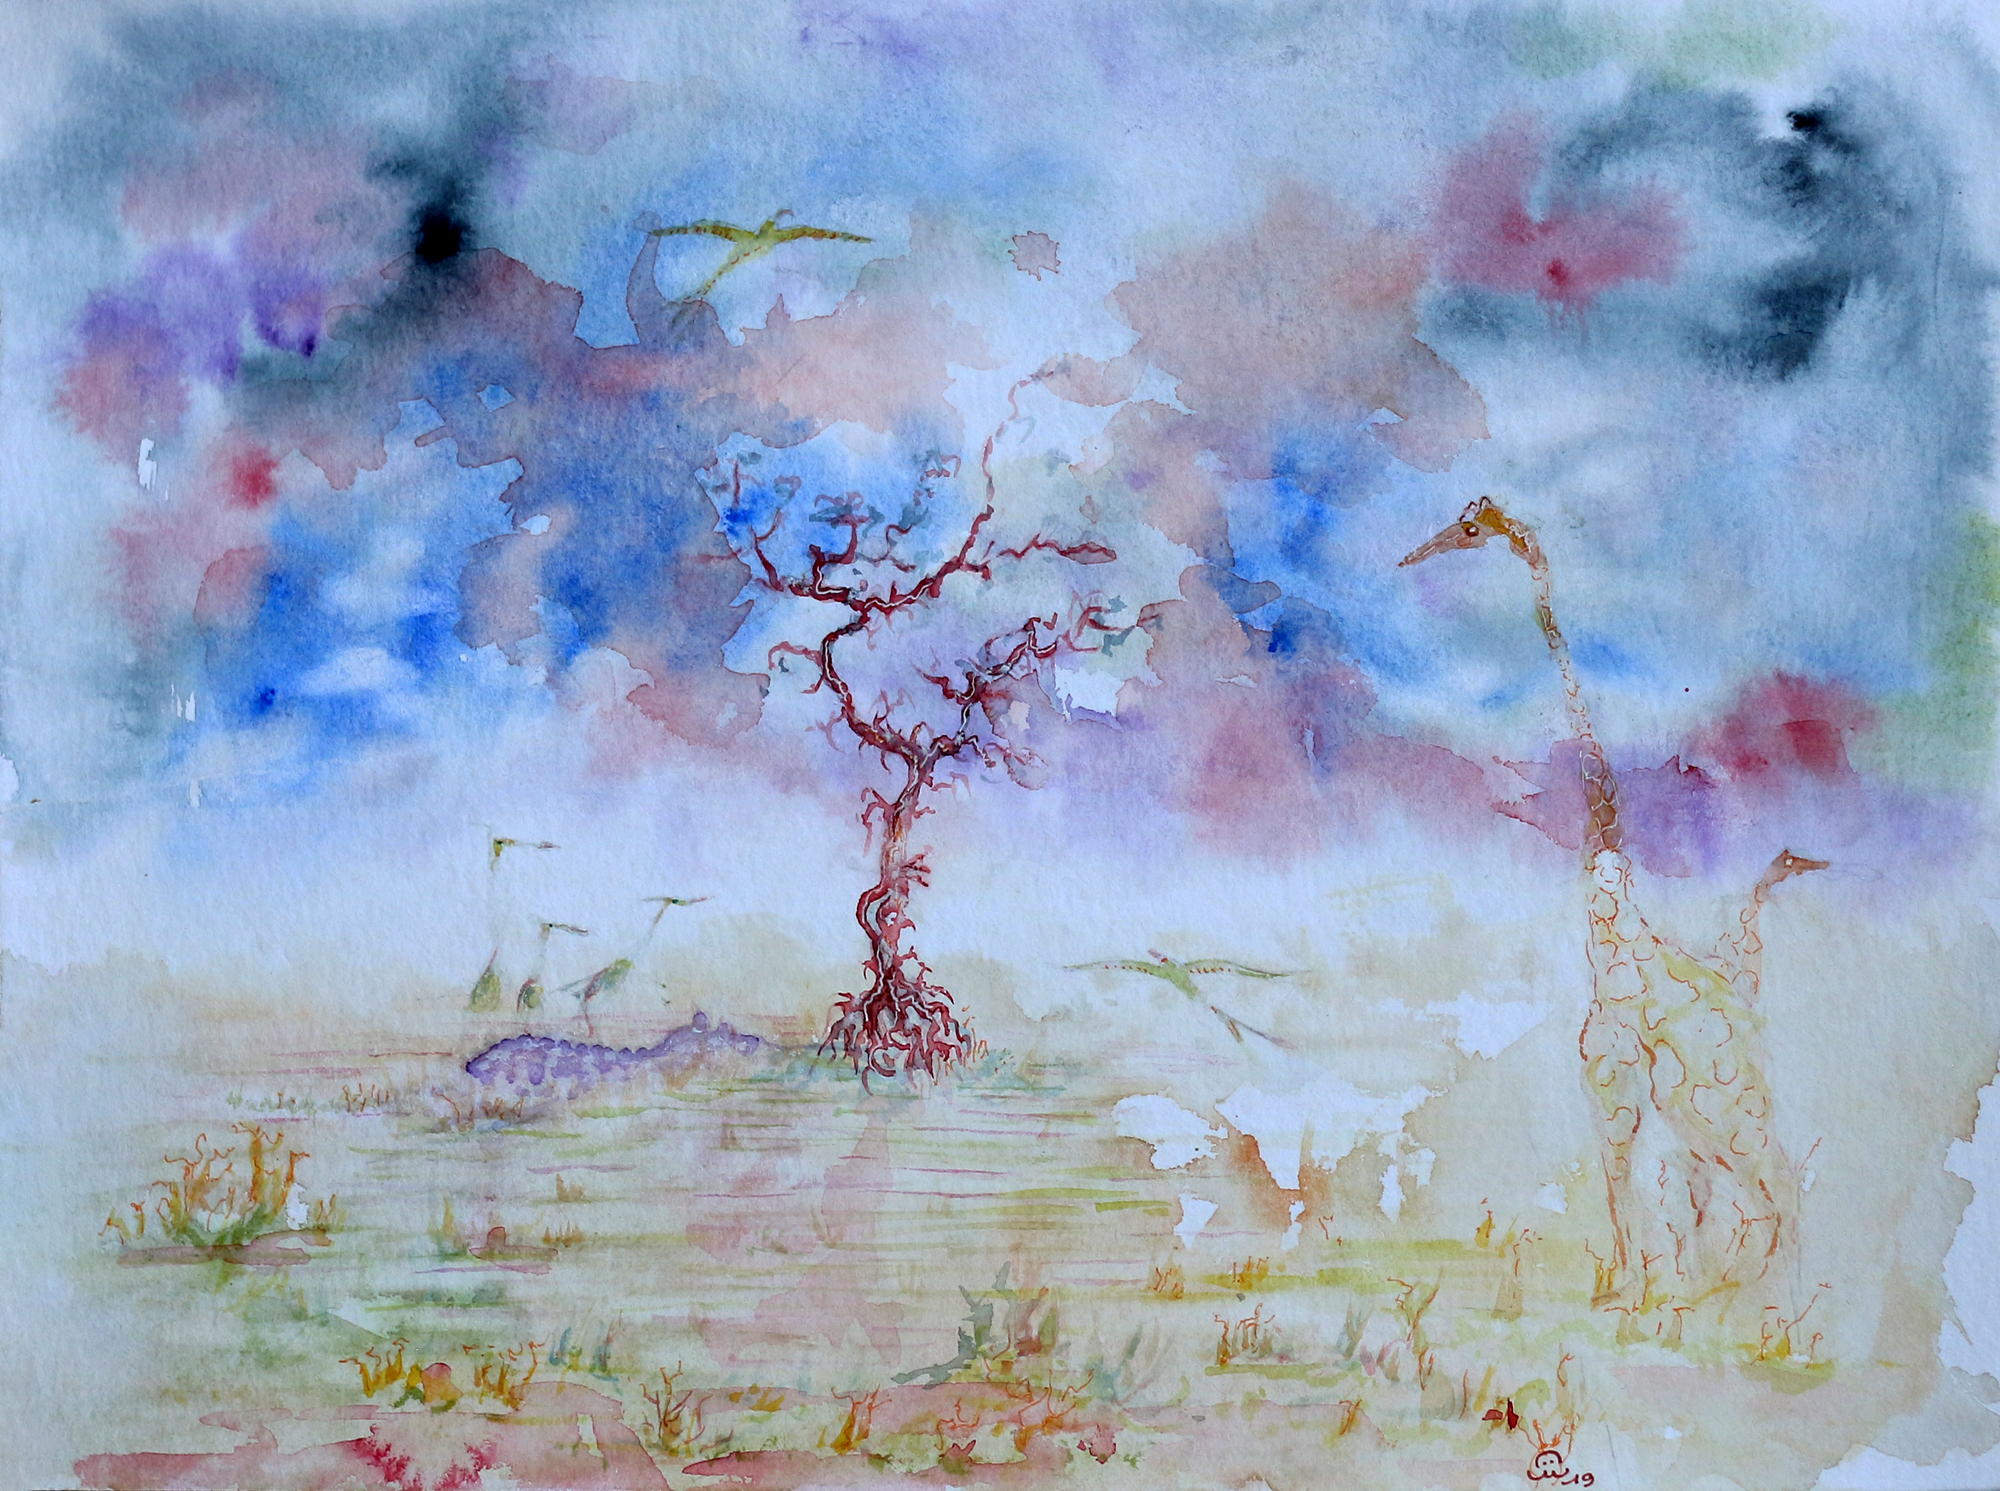 Aquarelles: Arbres imaginaires. Watercolors: Imaginary trees. 2008-2020